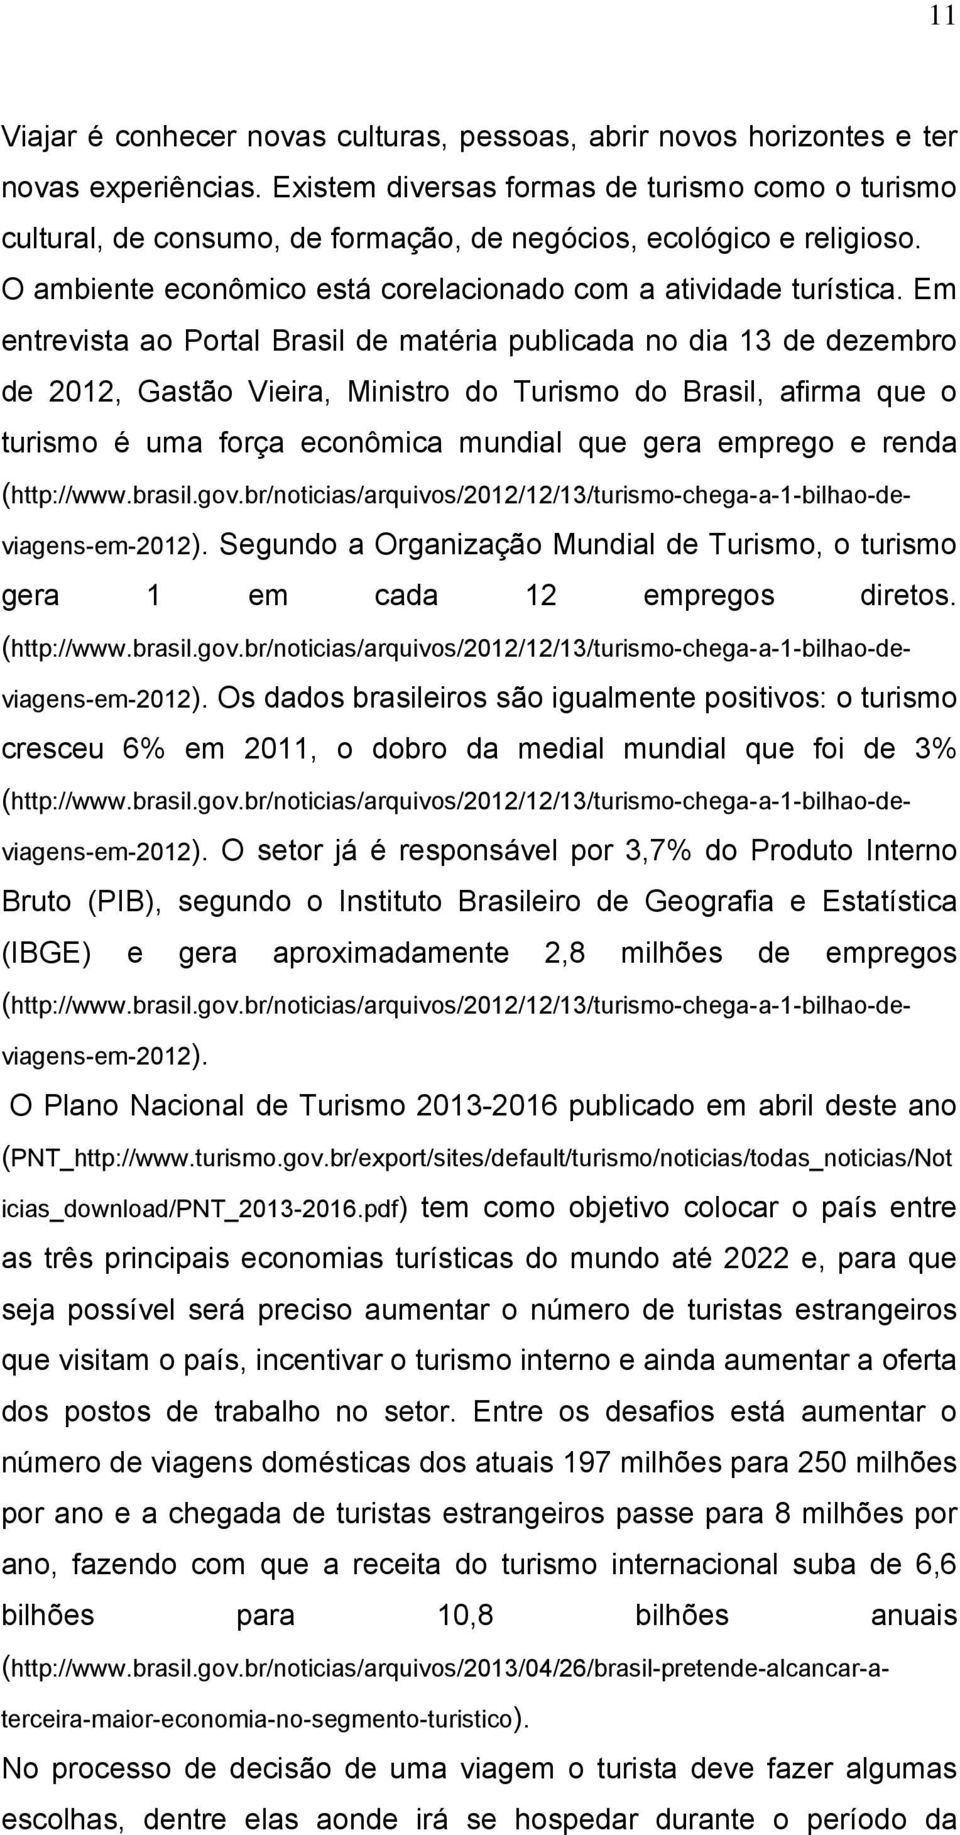 Em entrevista ao Portal Brasil de matéria publicada no dia 13 de dezembro de 2012, Gastão Vieira, Ministro do Turismo do Brasil, afirma que o turismo é uma força econômica mundial que gera emprego e